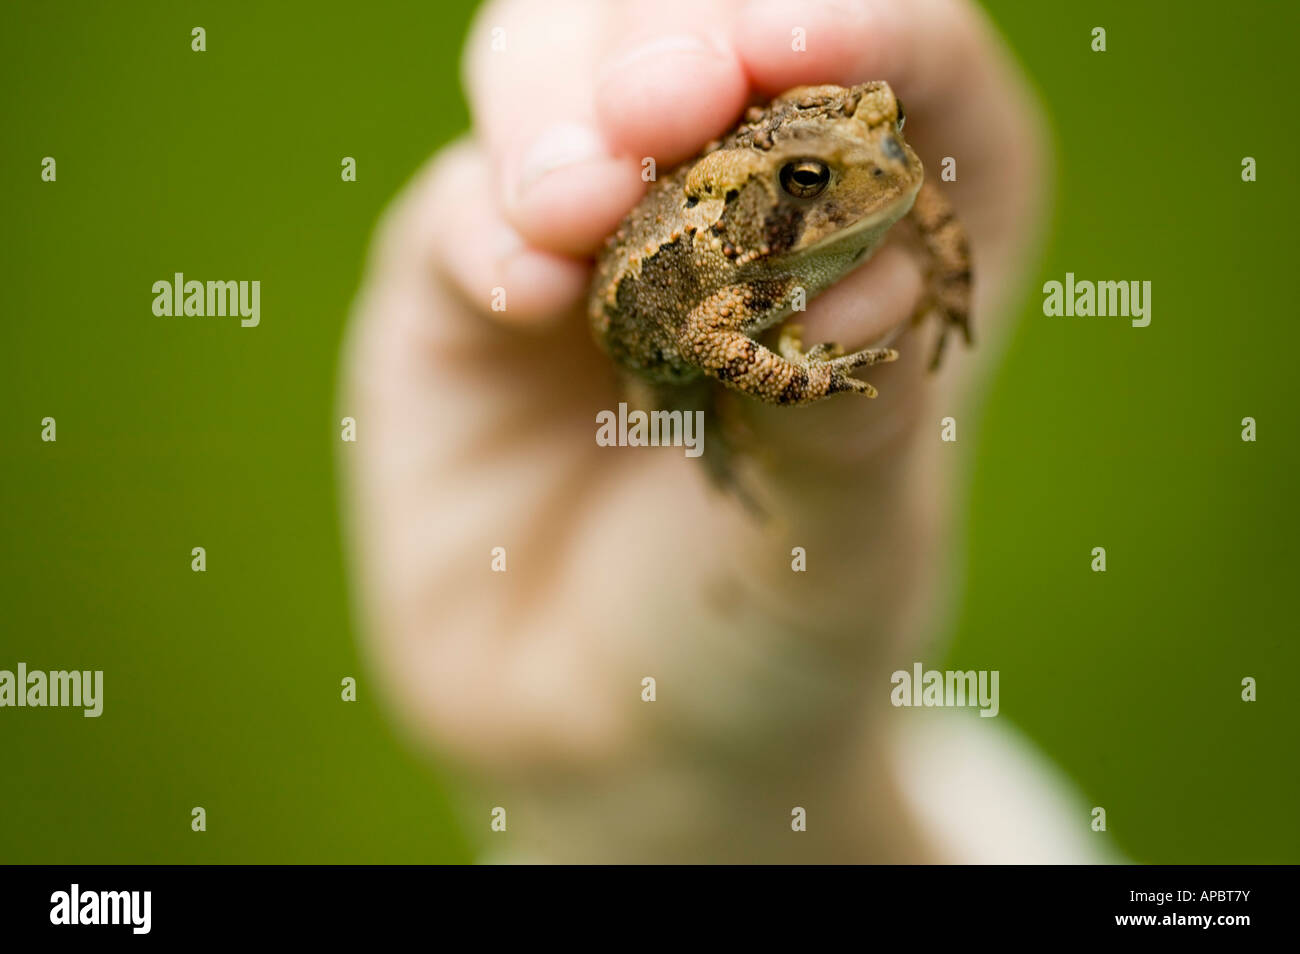 Kind hat Frosch oder Kröte in der hand Stockfoto